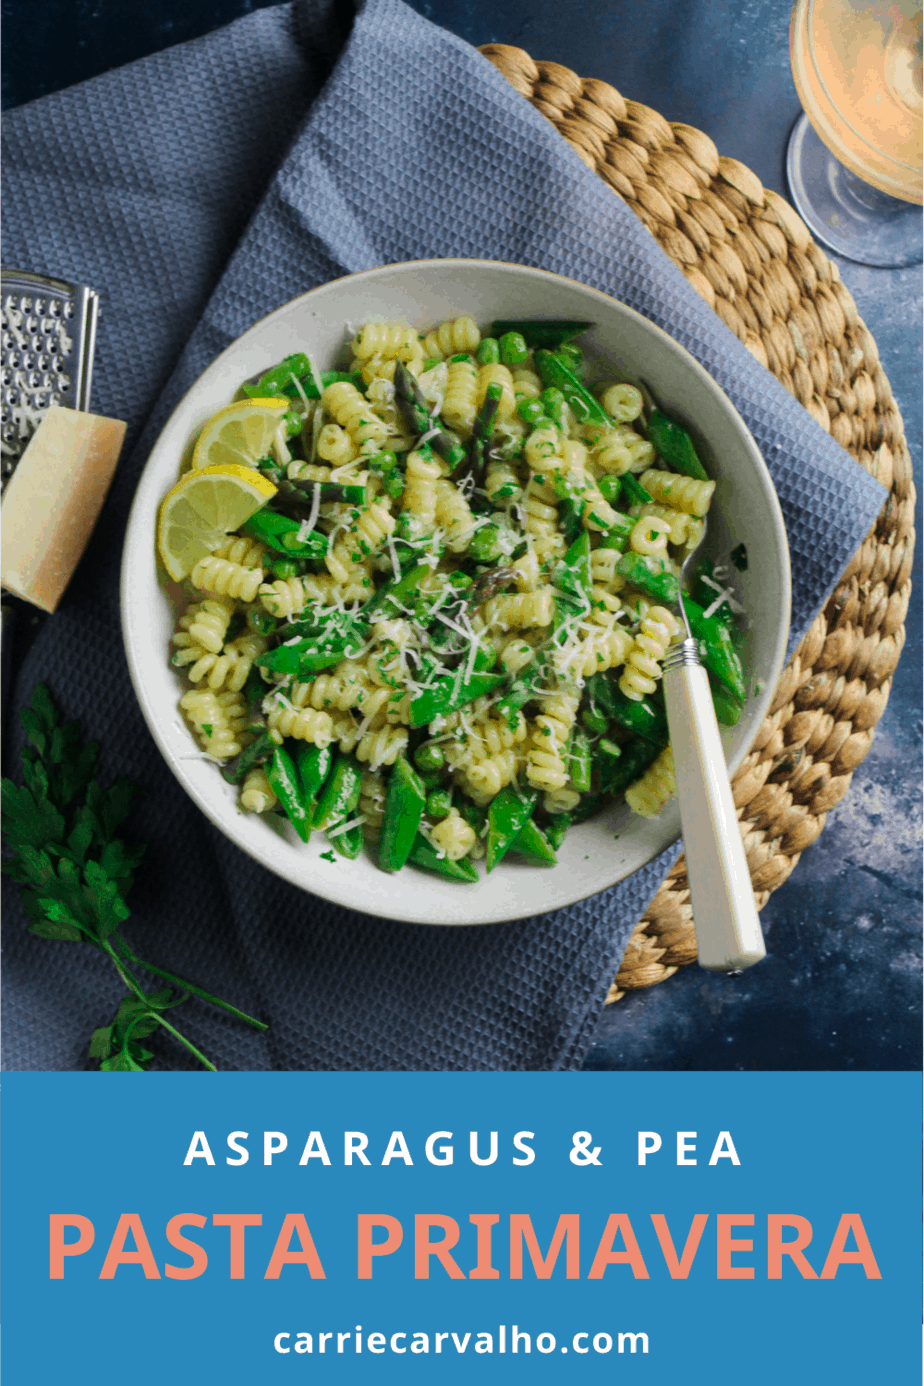 Pasta Primavera with Peas and Asparagus